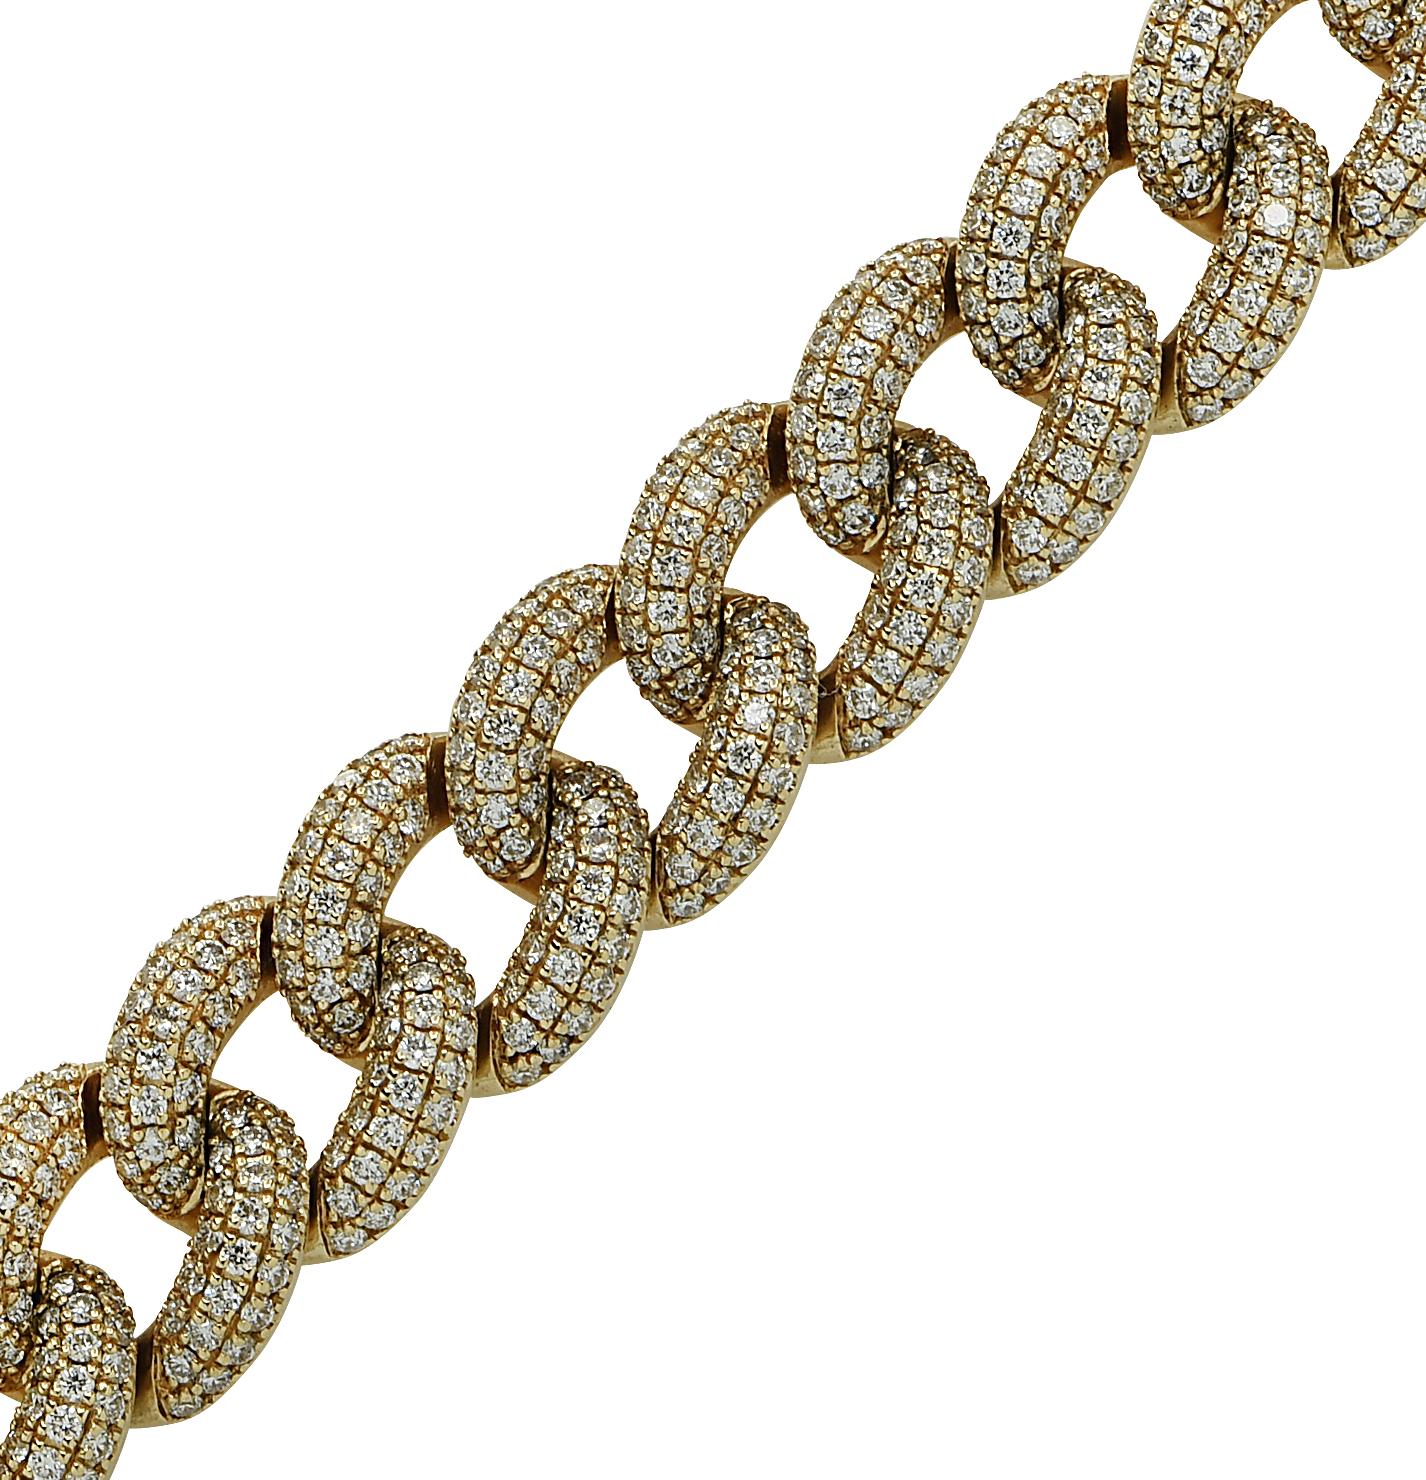 Exquisite Vivid Diamonds18 Karat yellow gold Cuban link bracelet featuring 5.46 carats of round brilliant cut diamonds, F-G color, VS clarity. Chaque diamant a été soigneusement sélectionné, parfaitement assorti et serti dans une éternité de